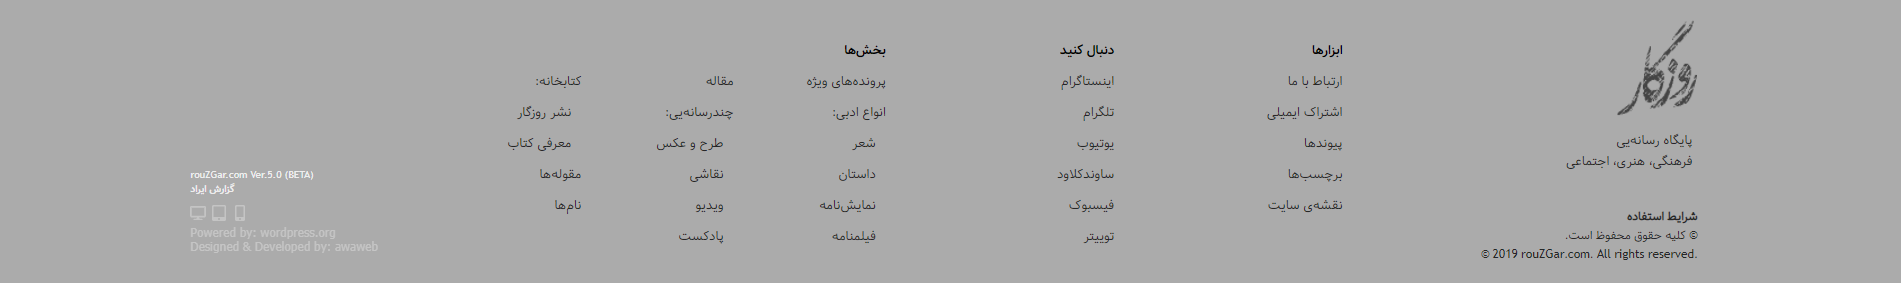 فوتر وبسایت محتوا و خبری پایگاه رسانه روزگار خرداد ۱۴۰۰